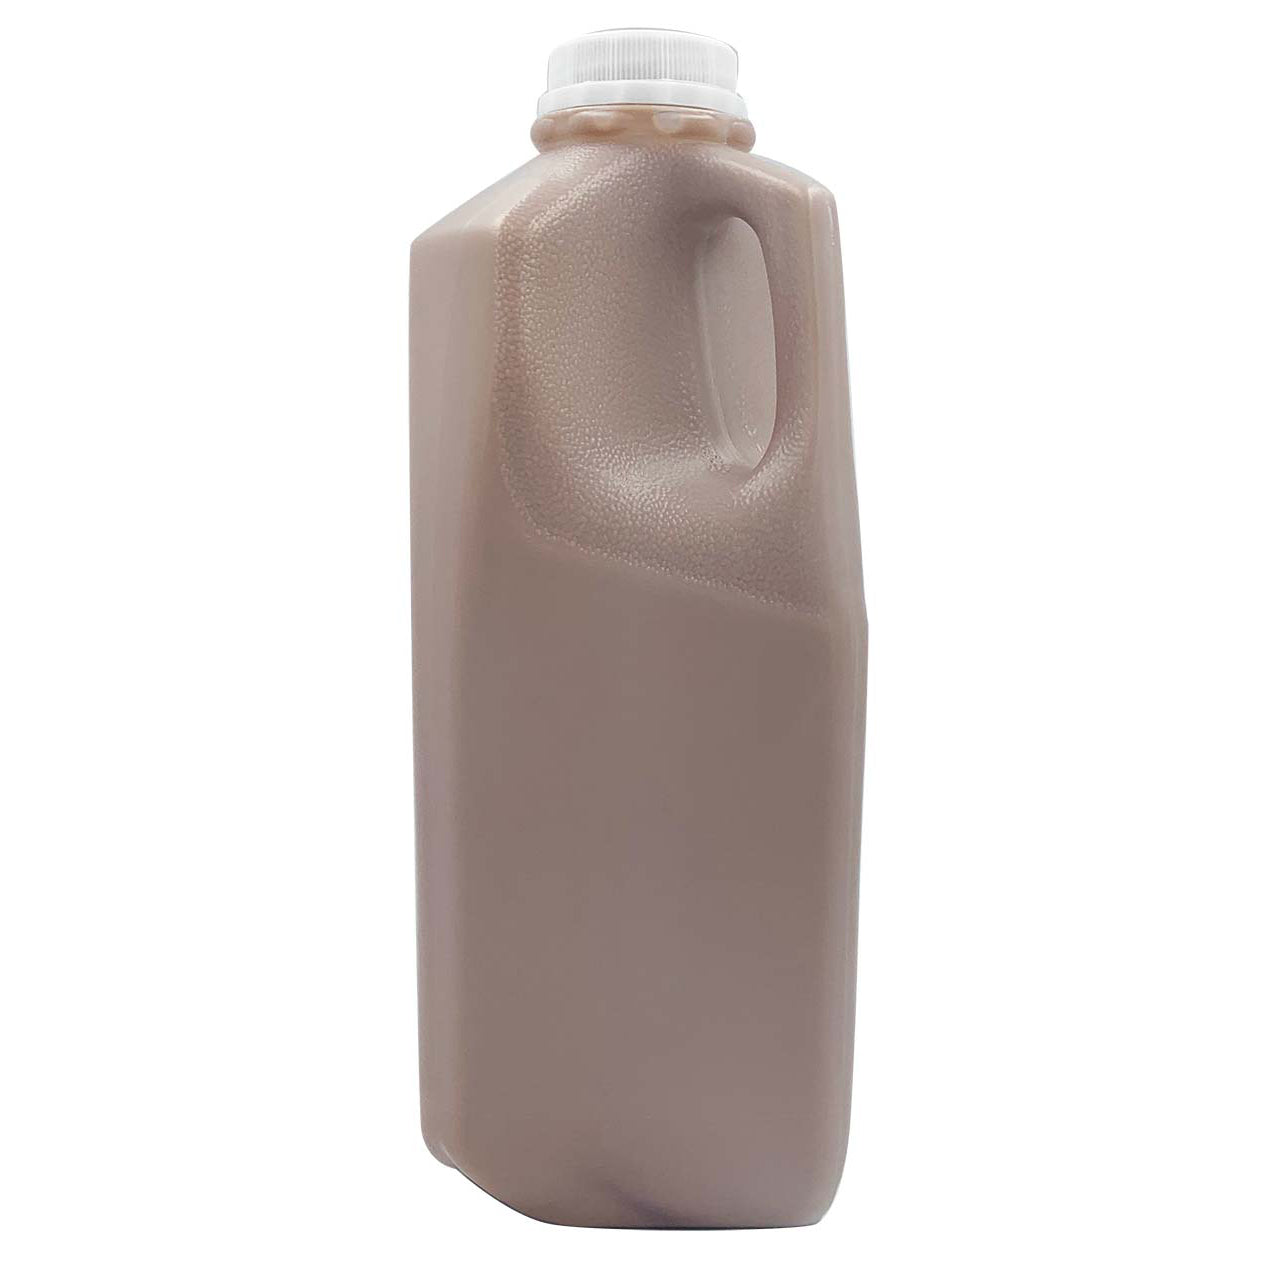 Milk - Grade A Whole A2 Chocolate Milk